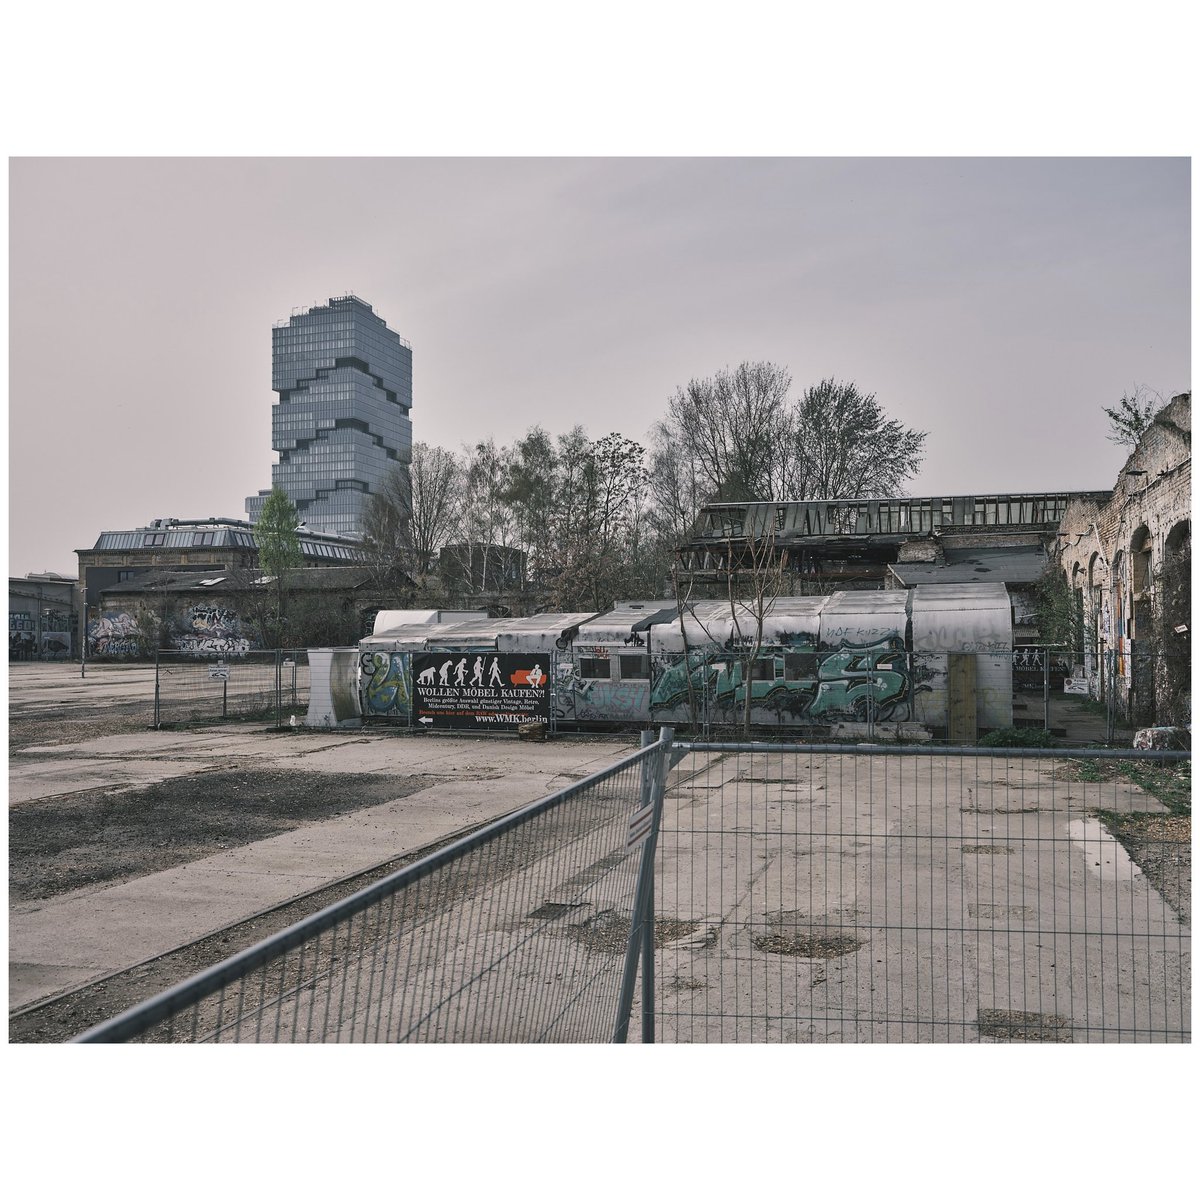 Captures of Berlin on medium format 
📷Fujifilm GF 50R + Mitakon 65mm/1.4
#berlin #urban #streetphotography #street #urbanphotography #city #citylife #photographyislife #justgoshoot #fujifilm